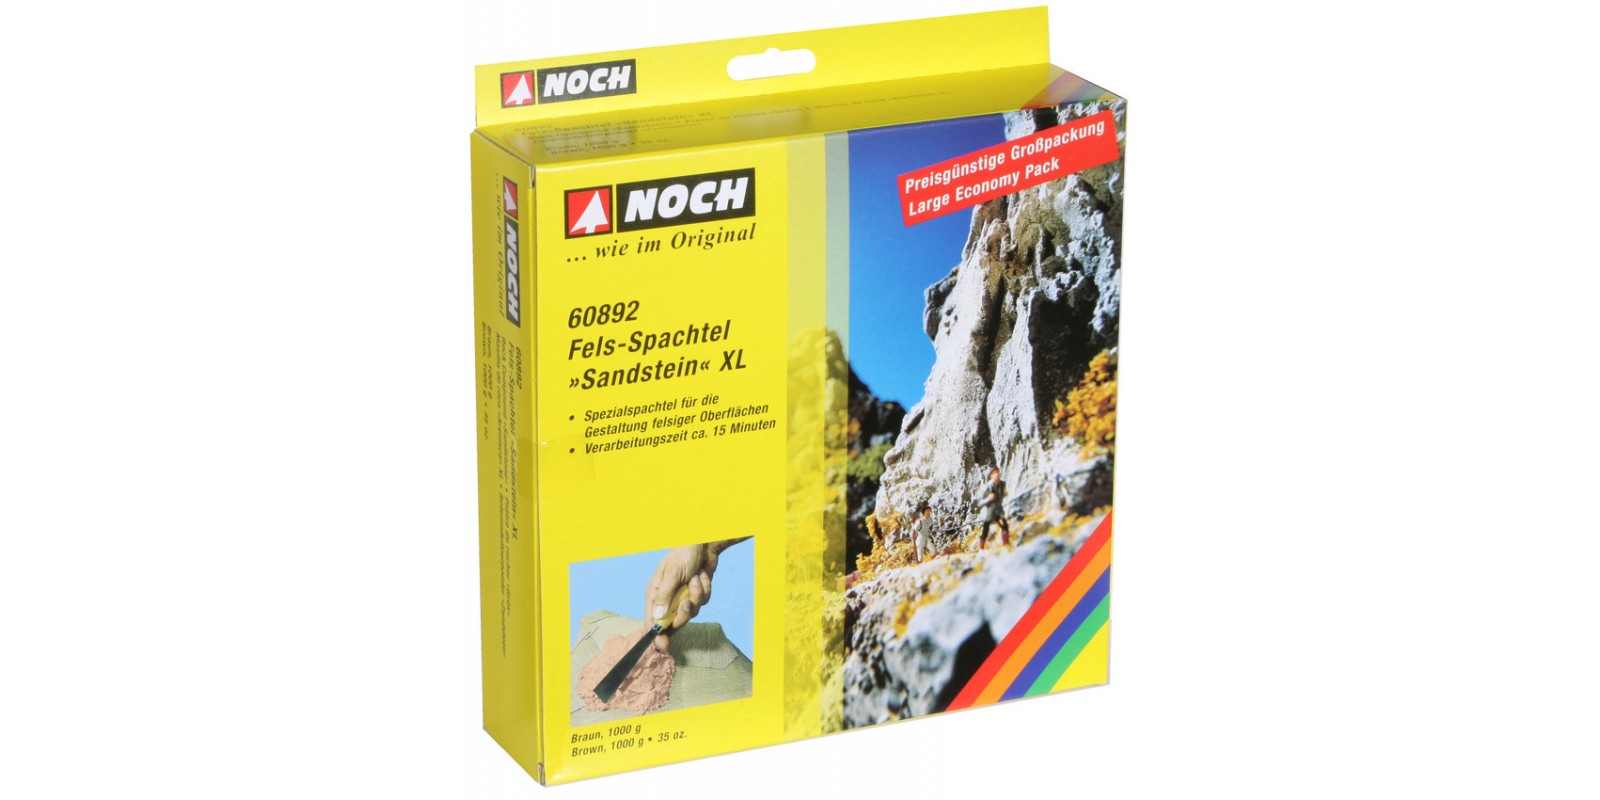 NO60892 Fels-Spachtel XL “Sandstein” 